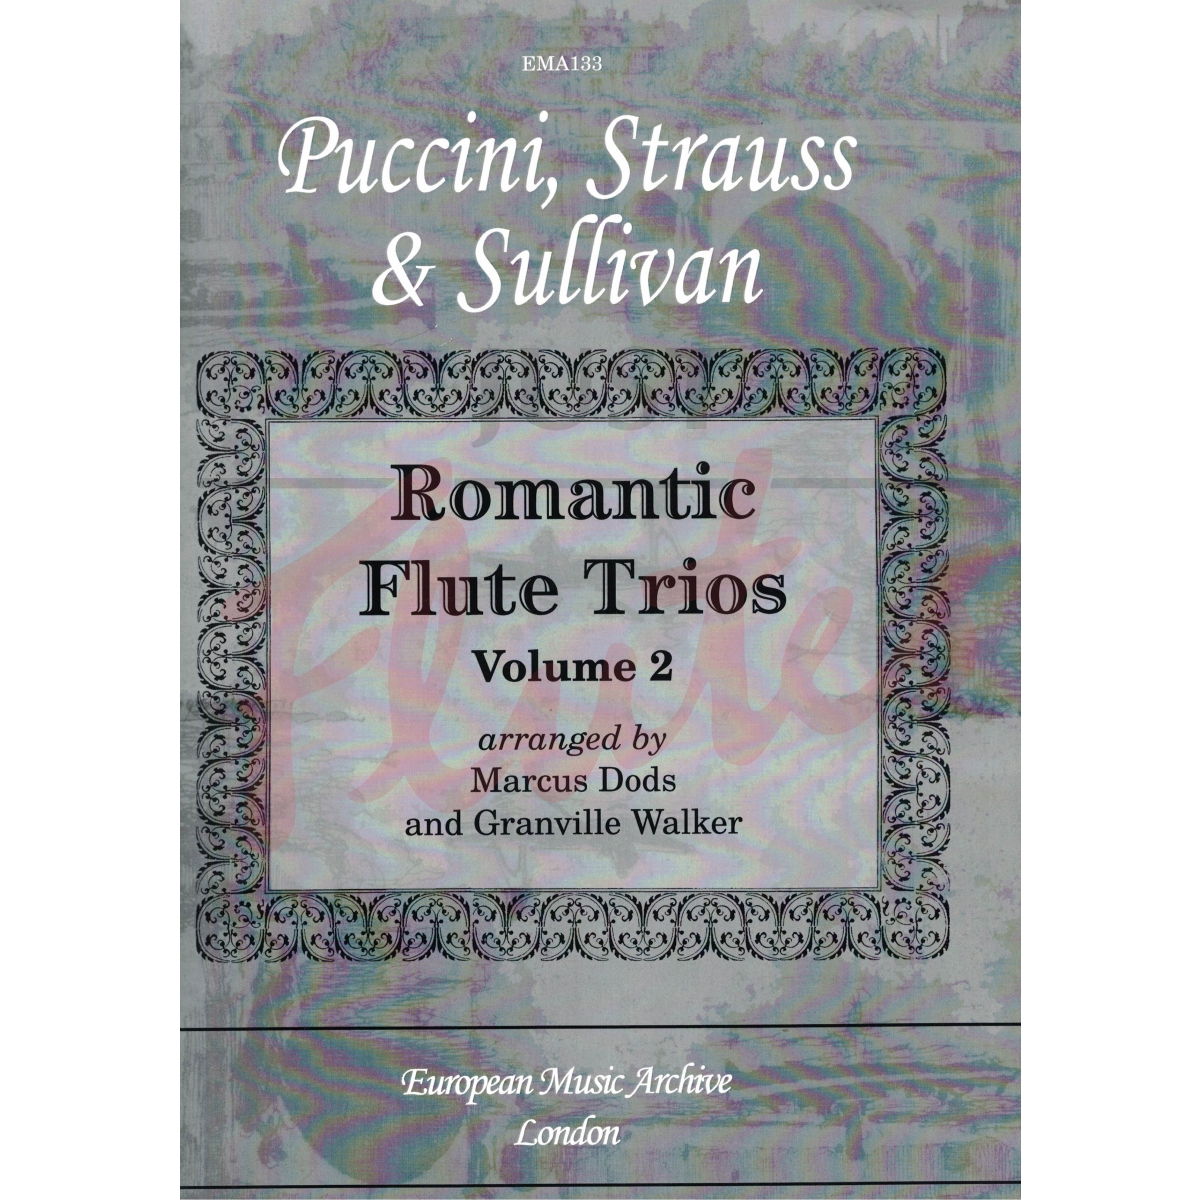 Romantic Flute Trios Vol 2